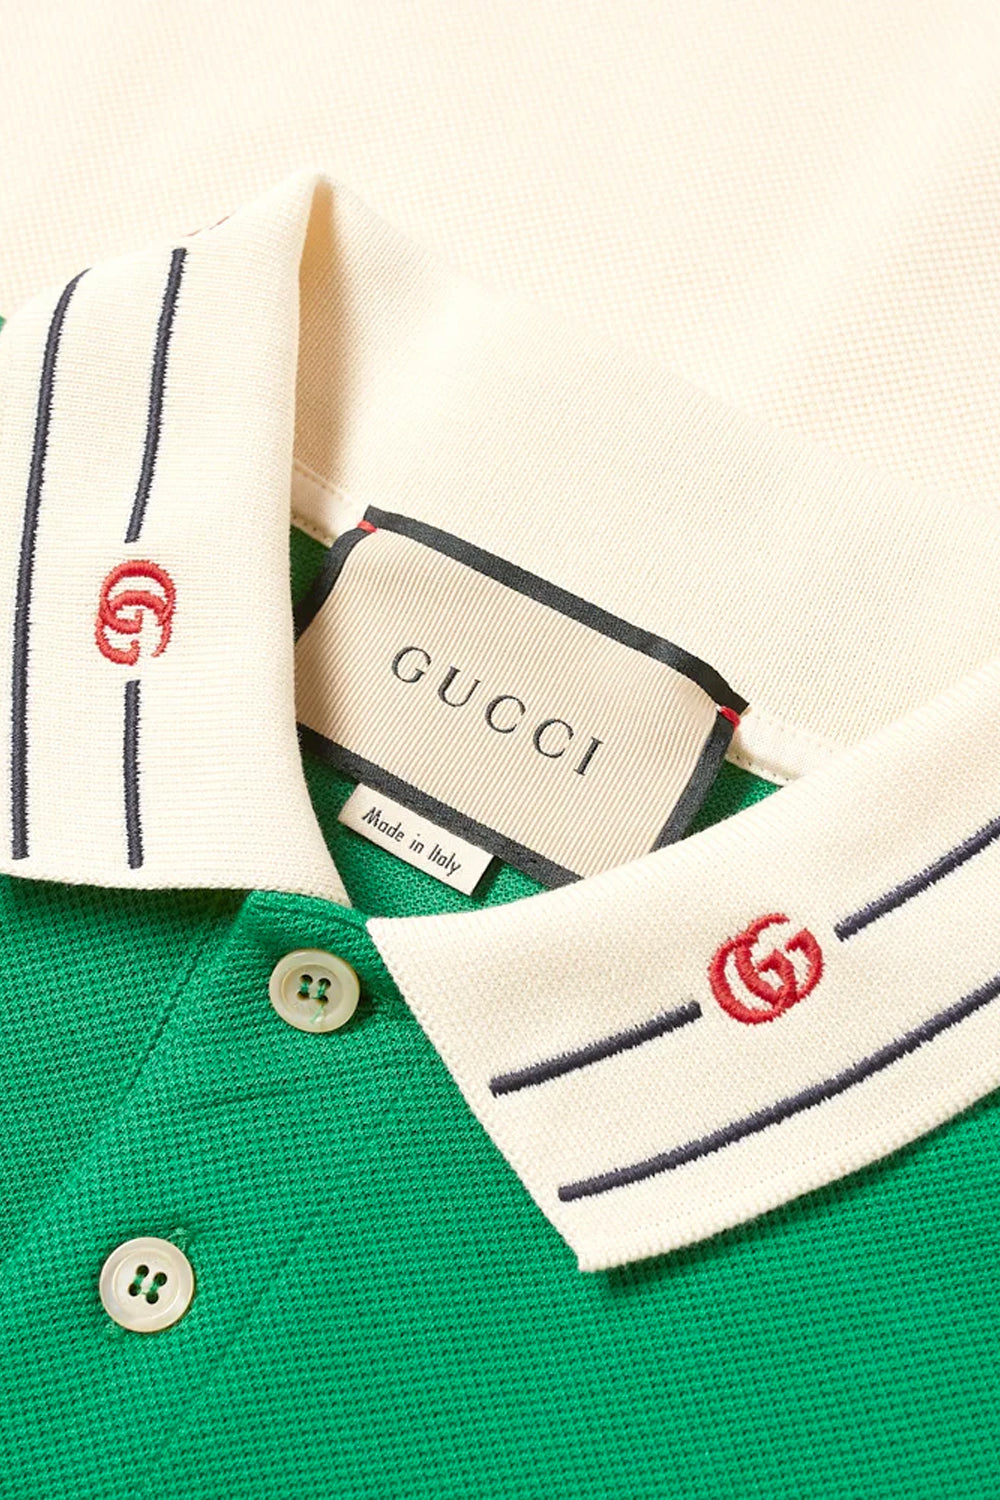 Gucci polo green